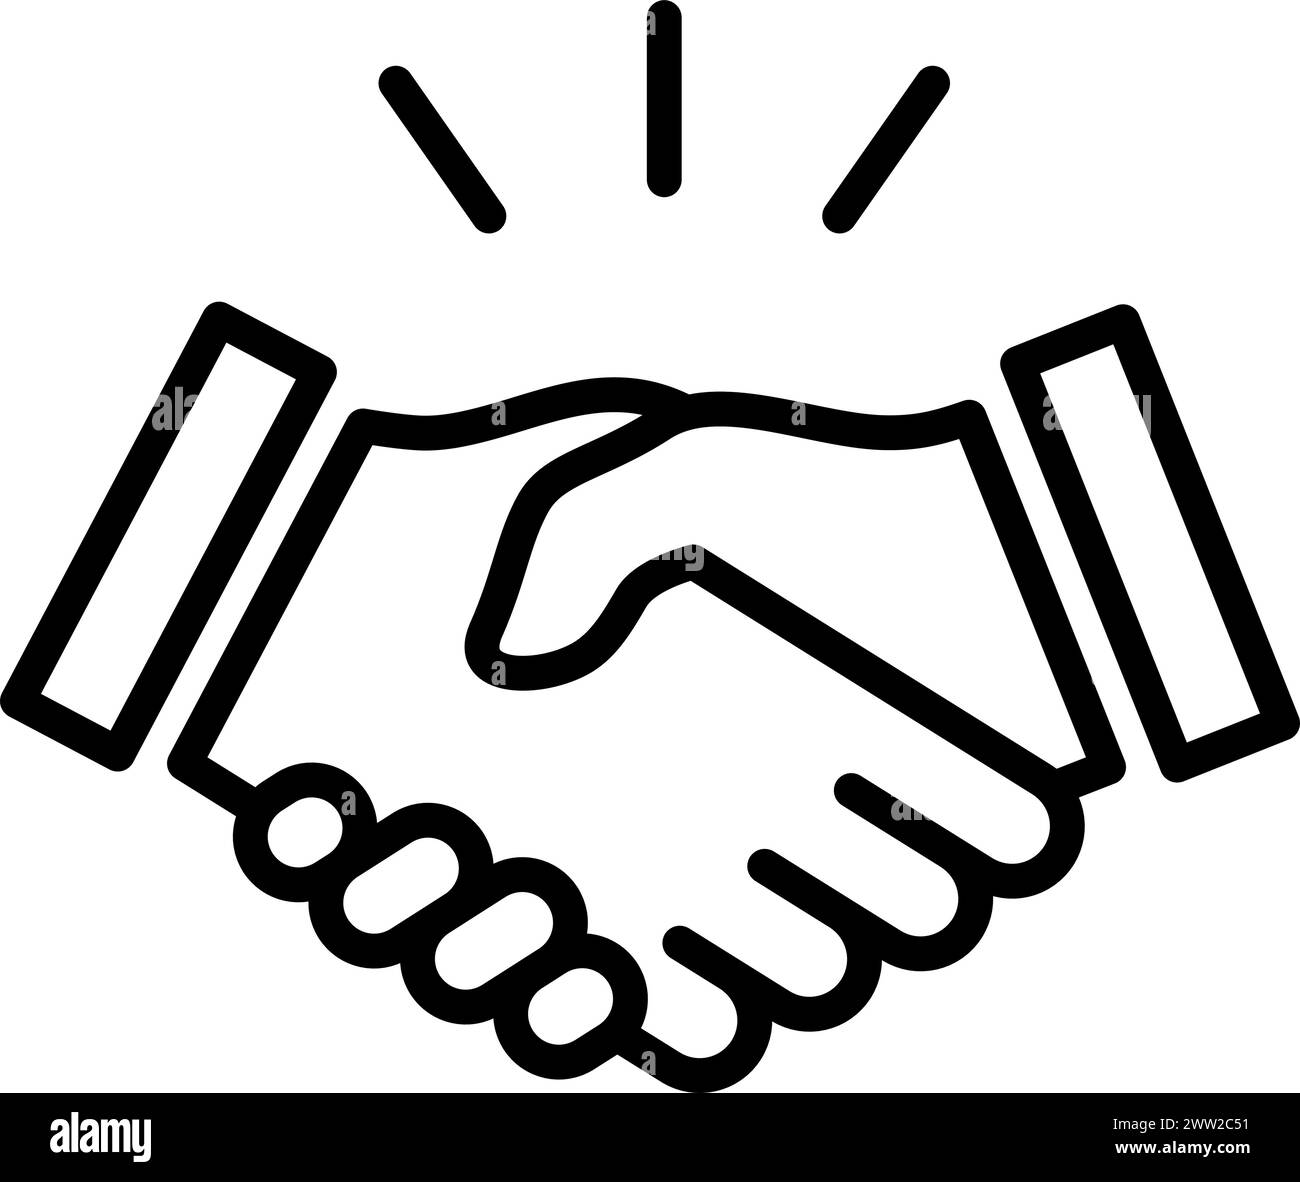 Handshake-Symbol als Konzept von Geschäftsvereinbarung, Vertrauen, Partnerschaft und Support Stock Vektor